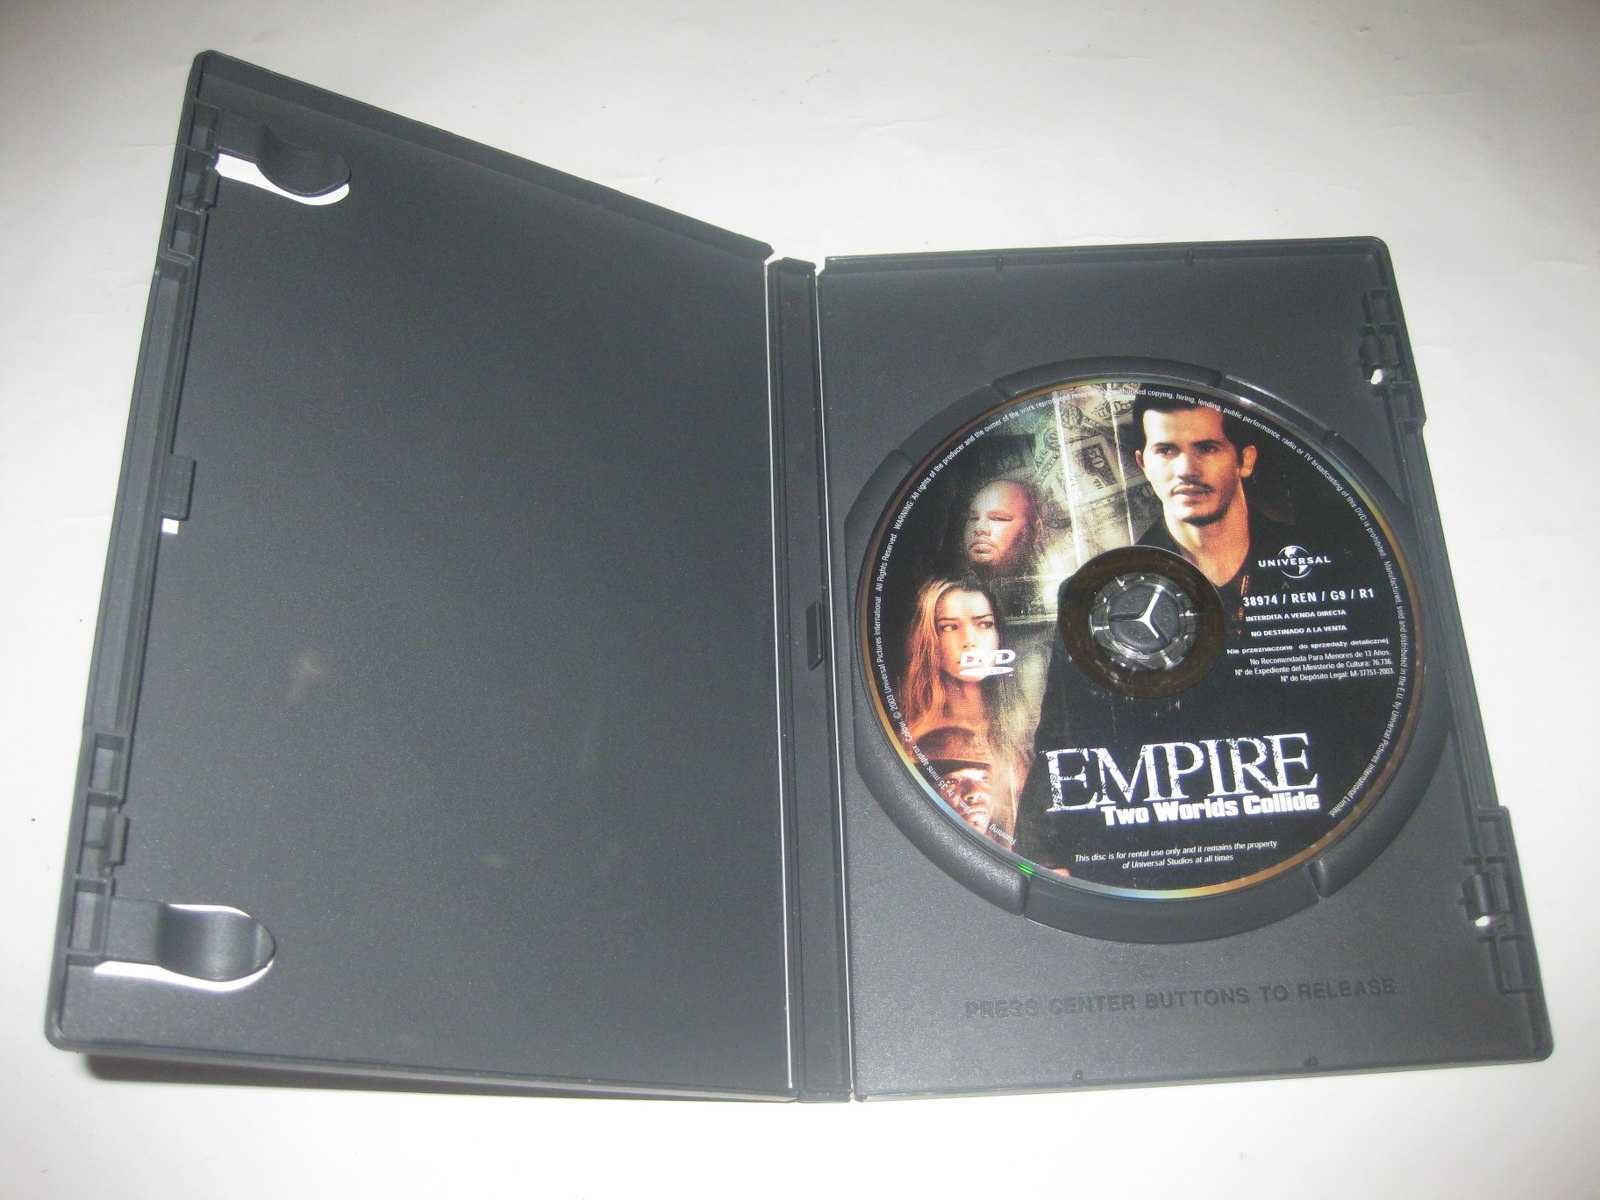 DVD "Império" com John Leguizamo